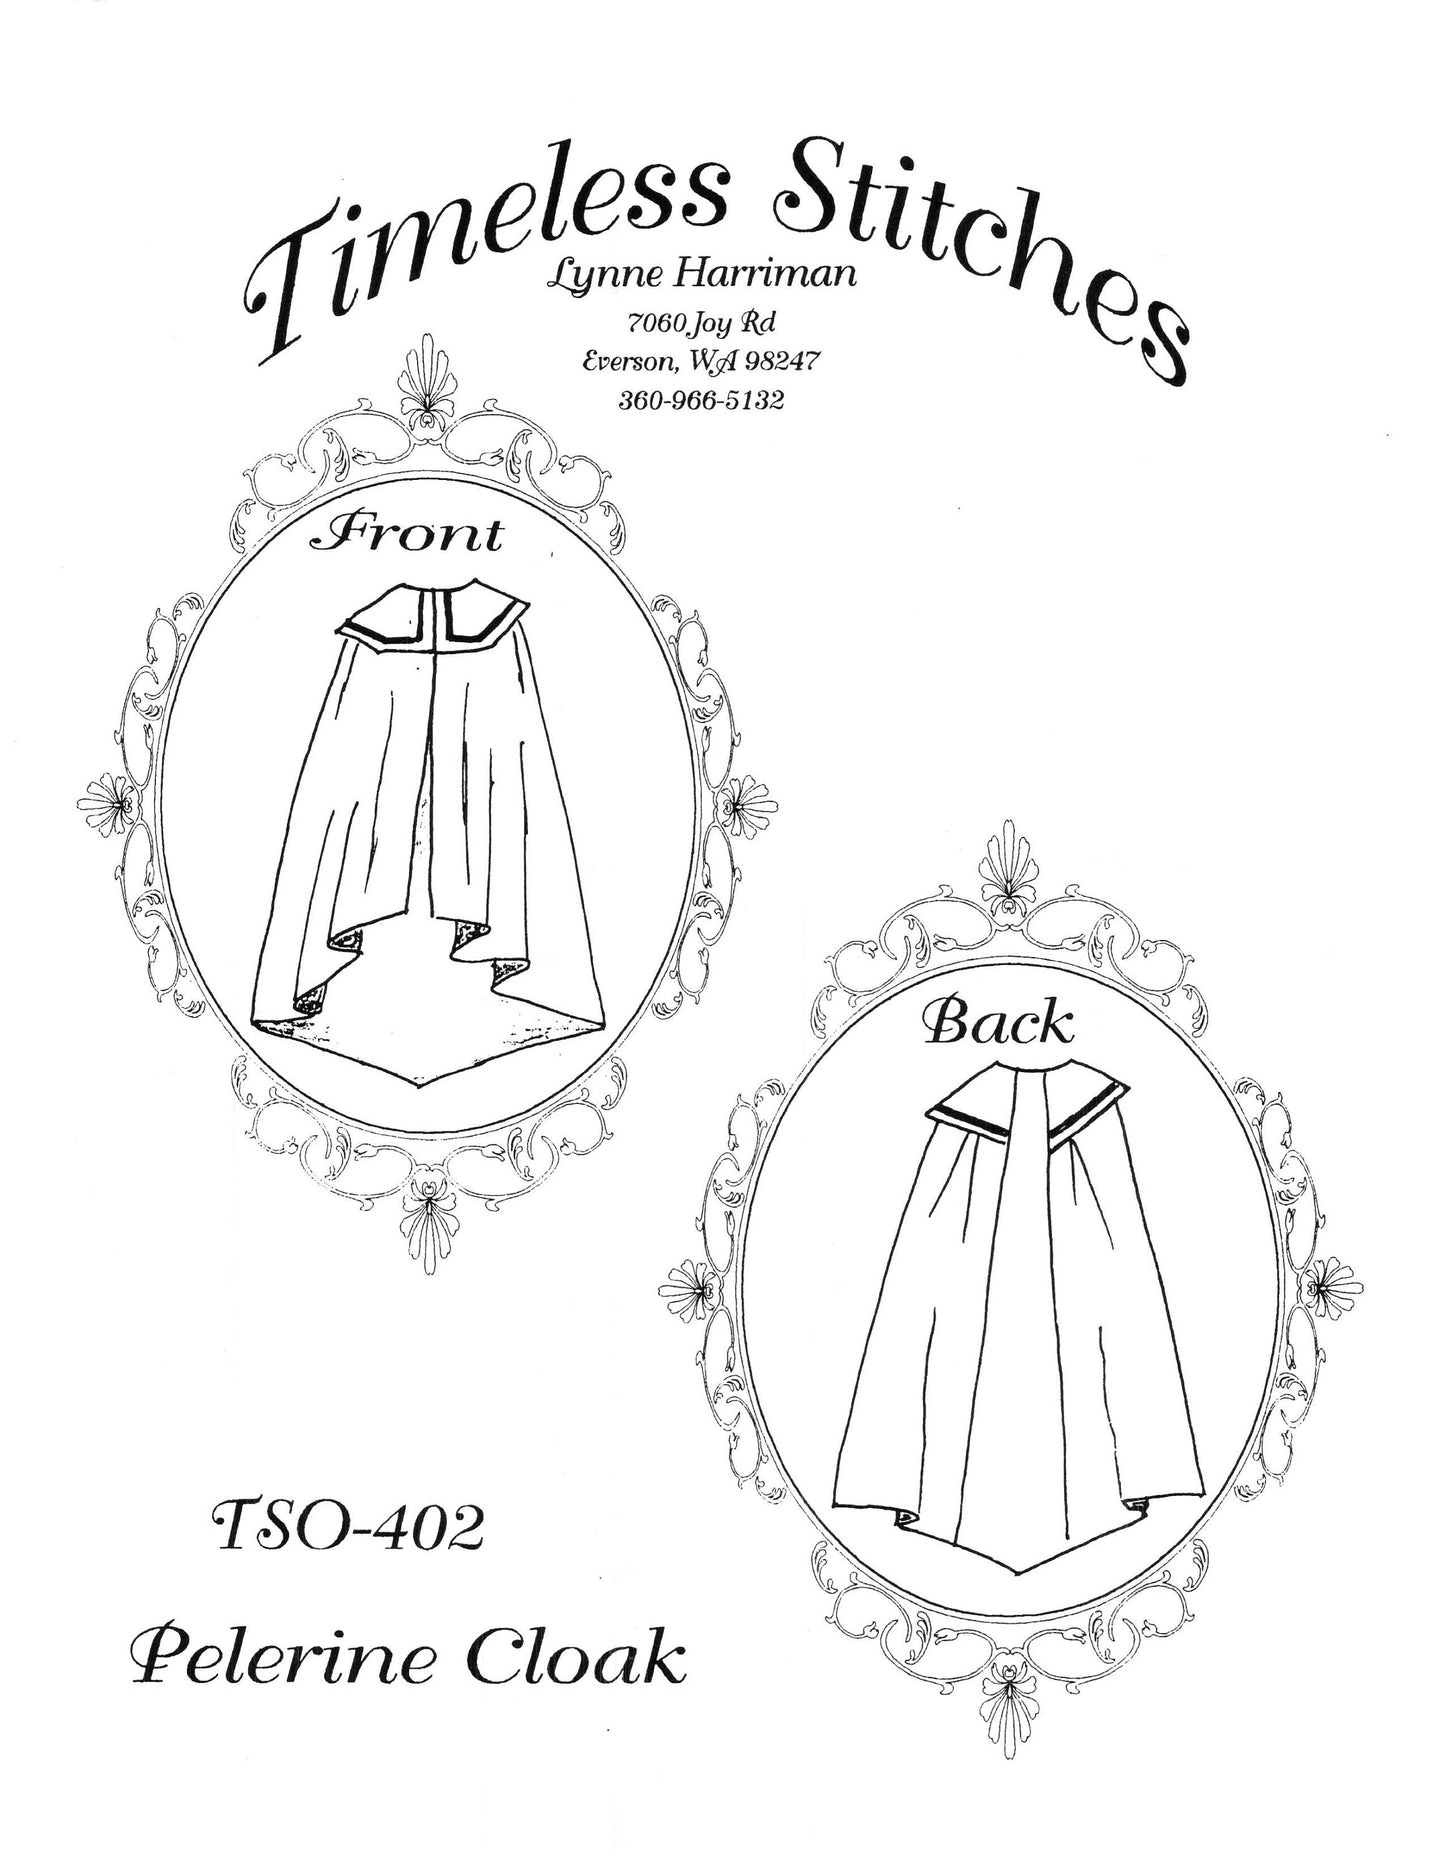 Pelerine Cloak/19th Century Cloak Cape Pattern/ Timeless Stitches Sewing Pattern TSO- 402 Pelereine Cloak